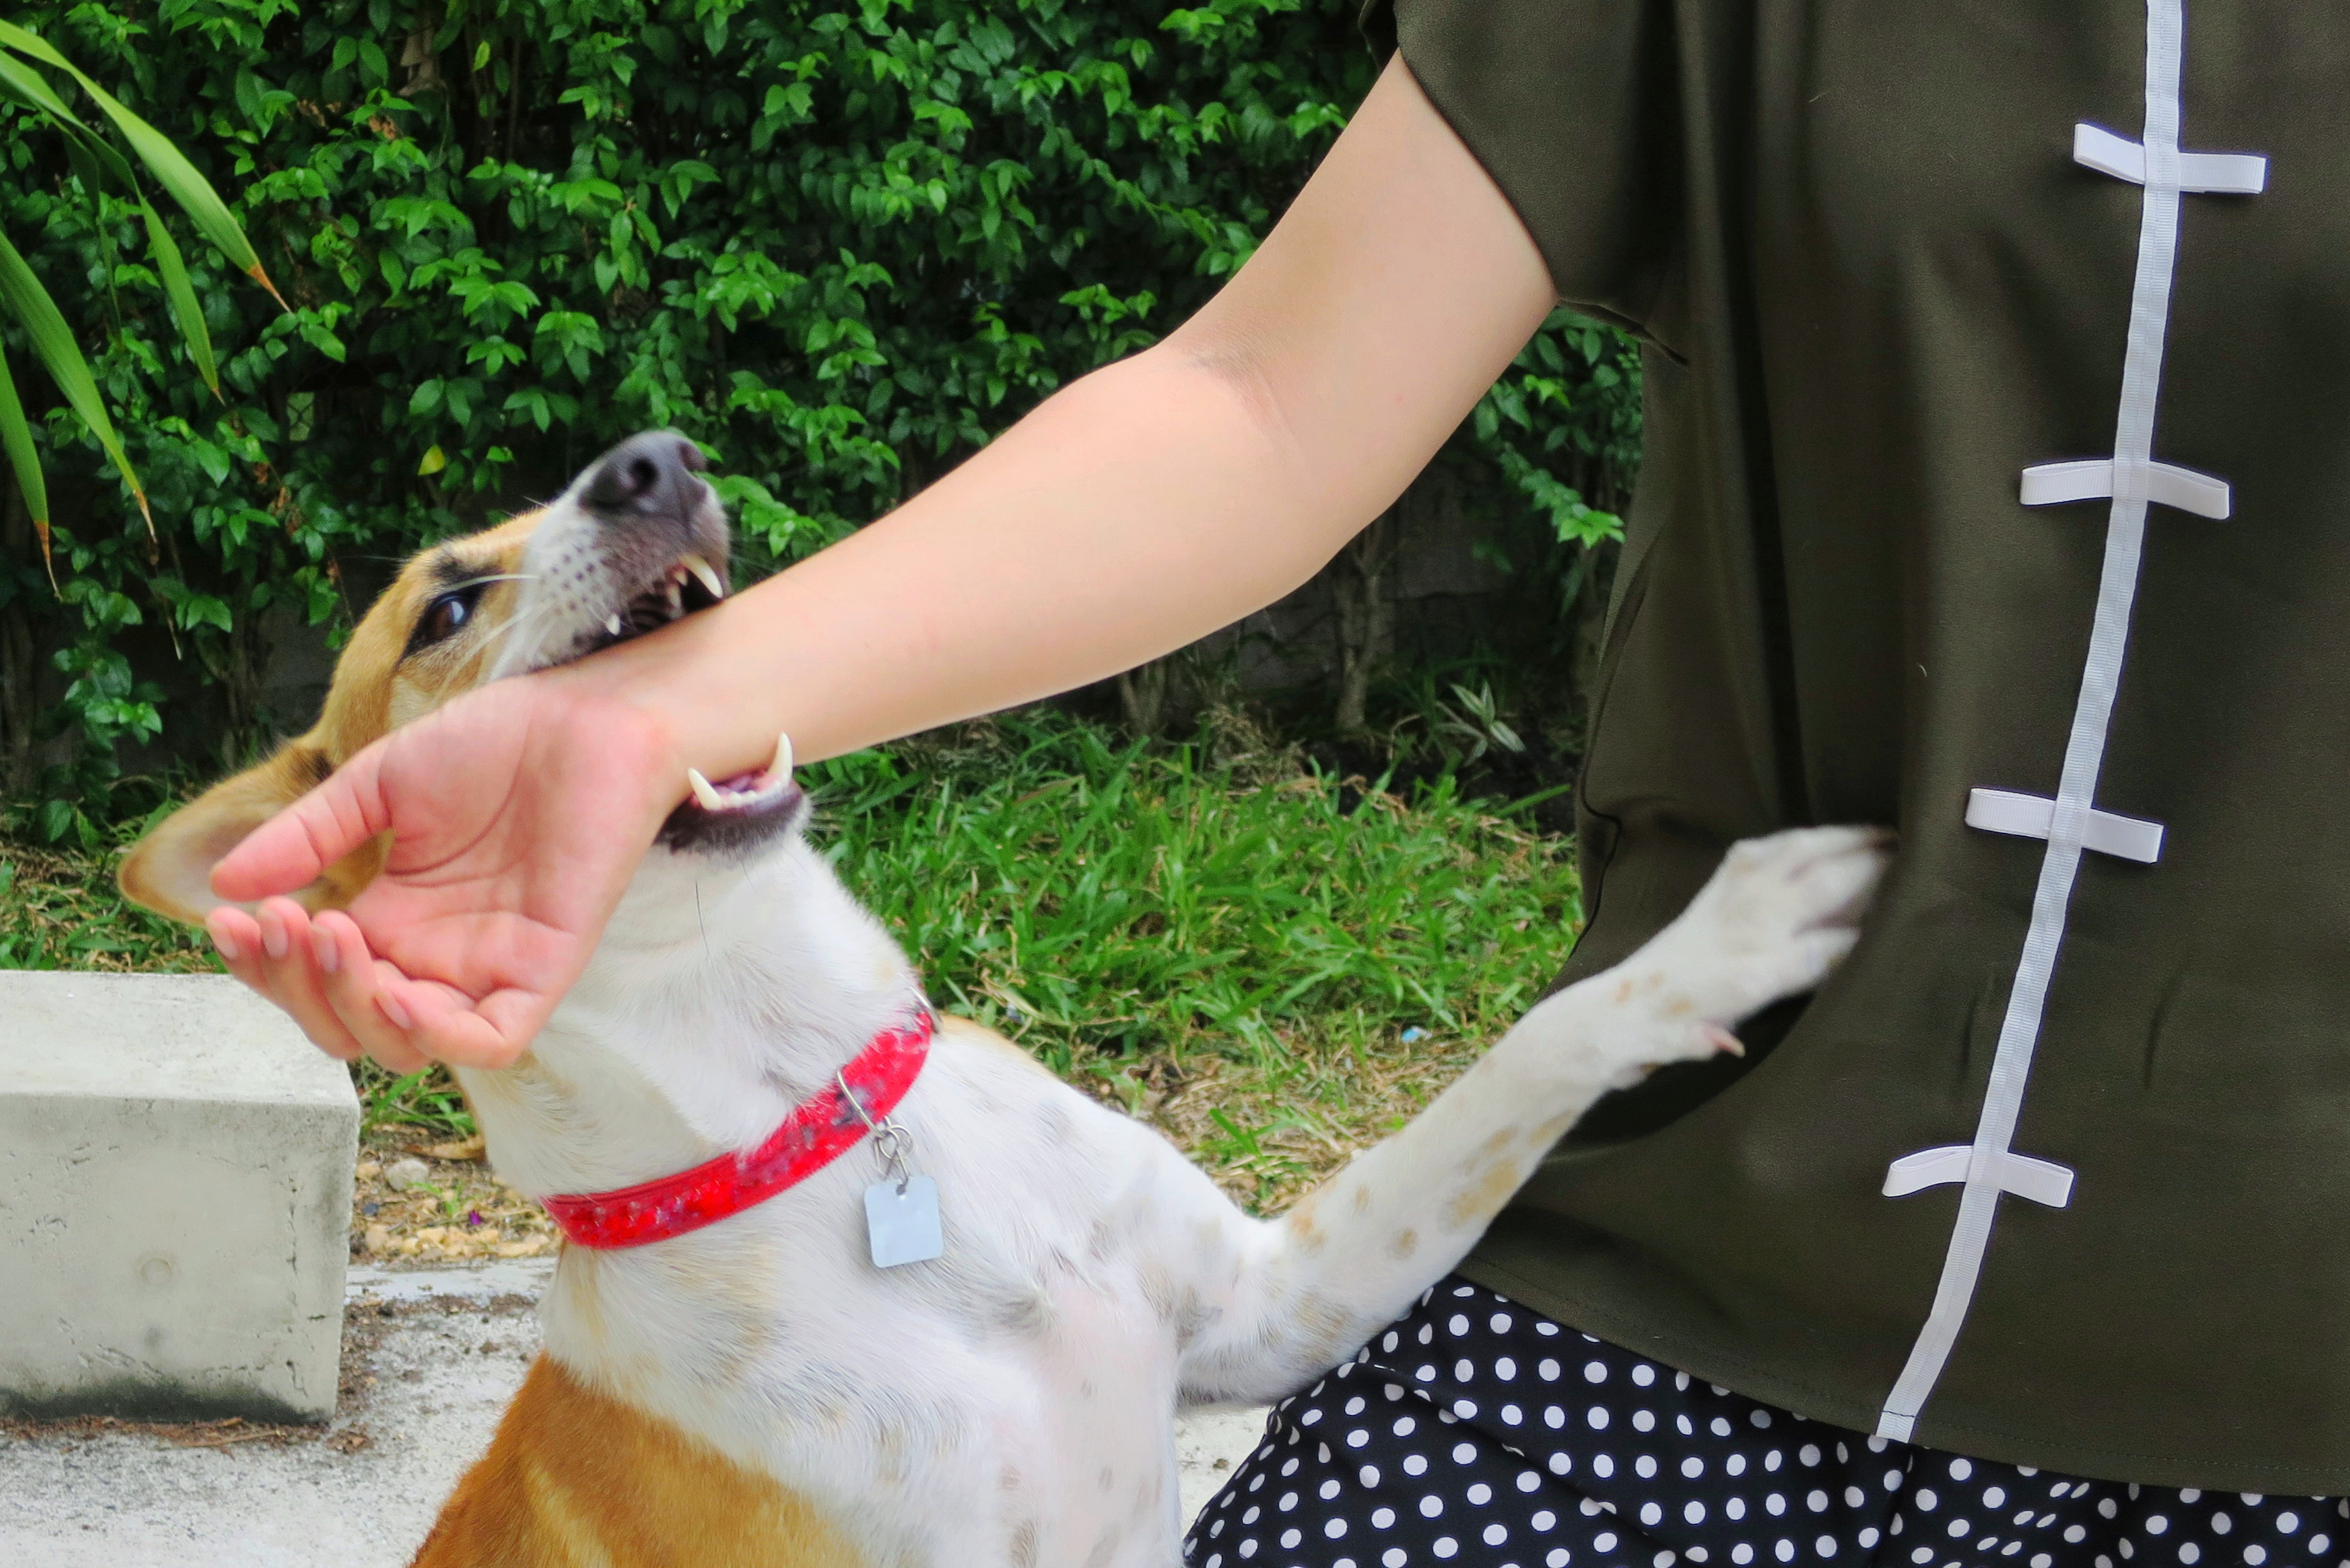 Los perros son los animales responsables de la mayoría de casos de transmisión de rabia en el mundo, cuando muerden  a humanos o su saliva tiene contacto con lesiones. (Foto Prensa Libre, ShutterStock)